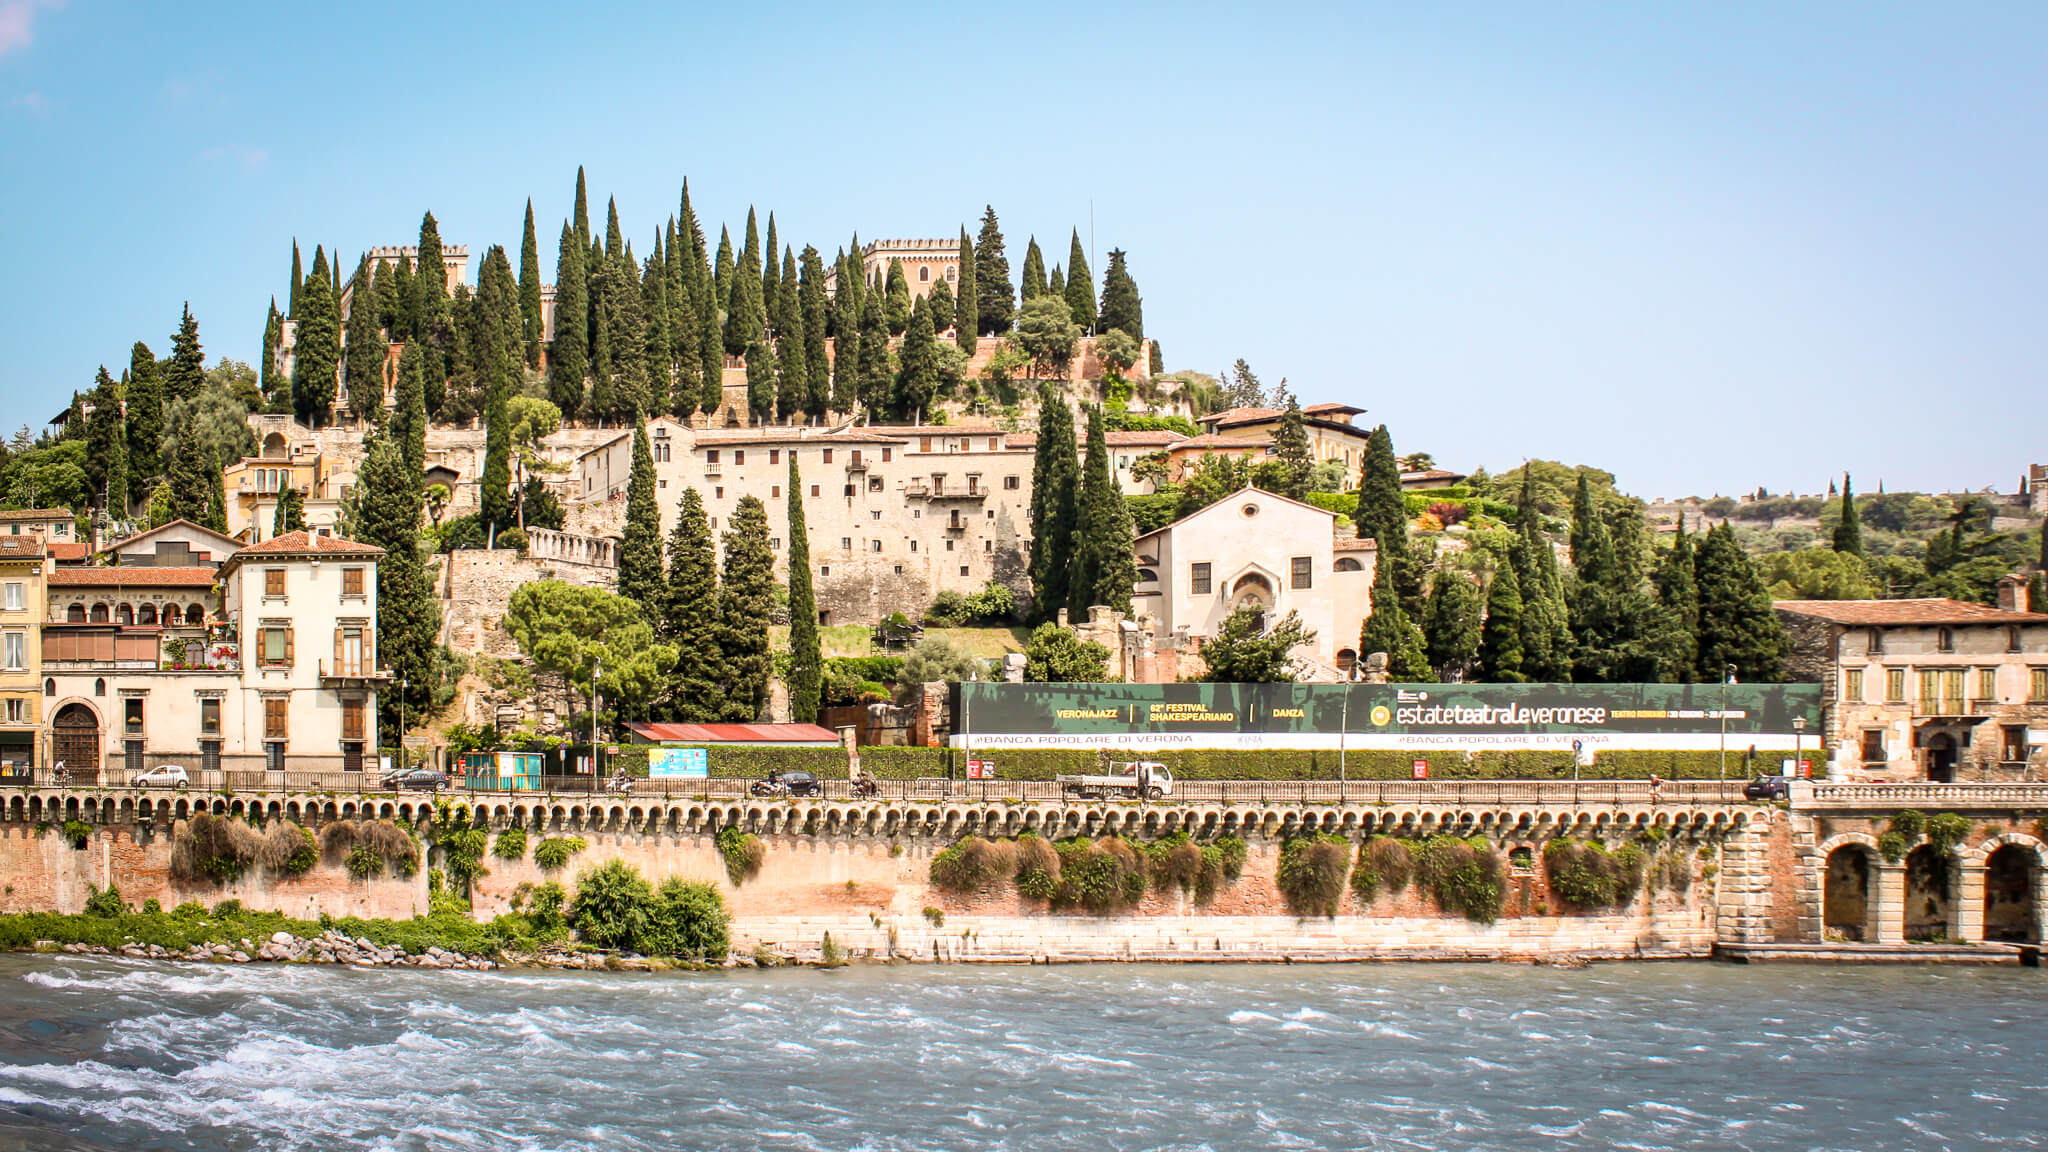 San Pietro hill and castle in Verona